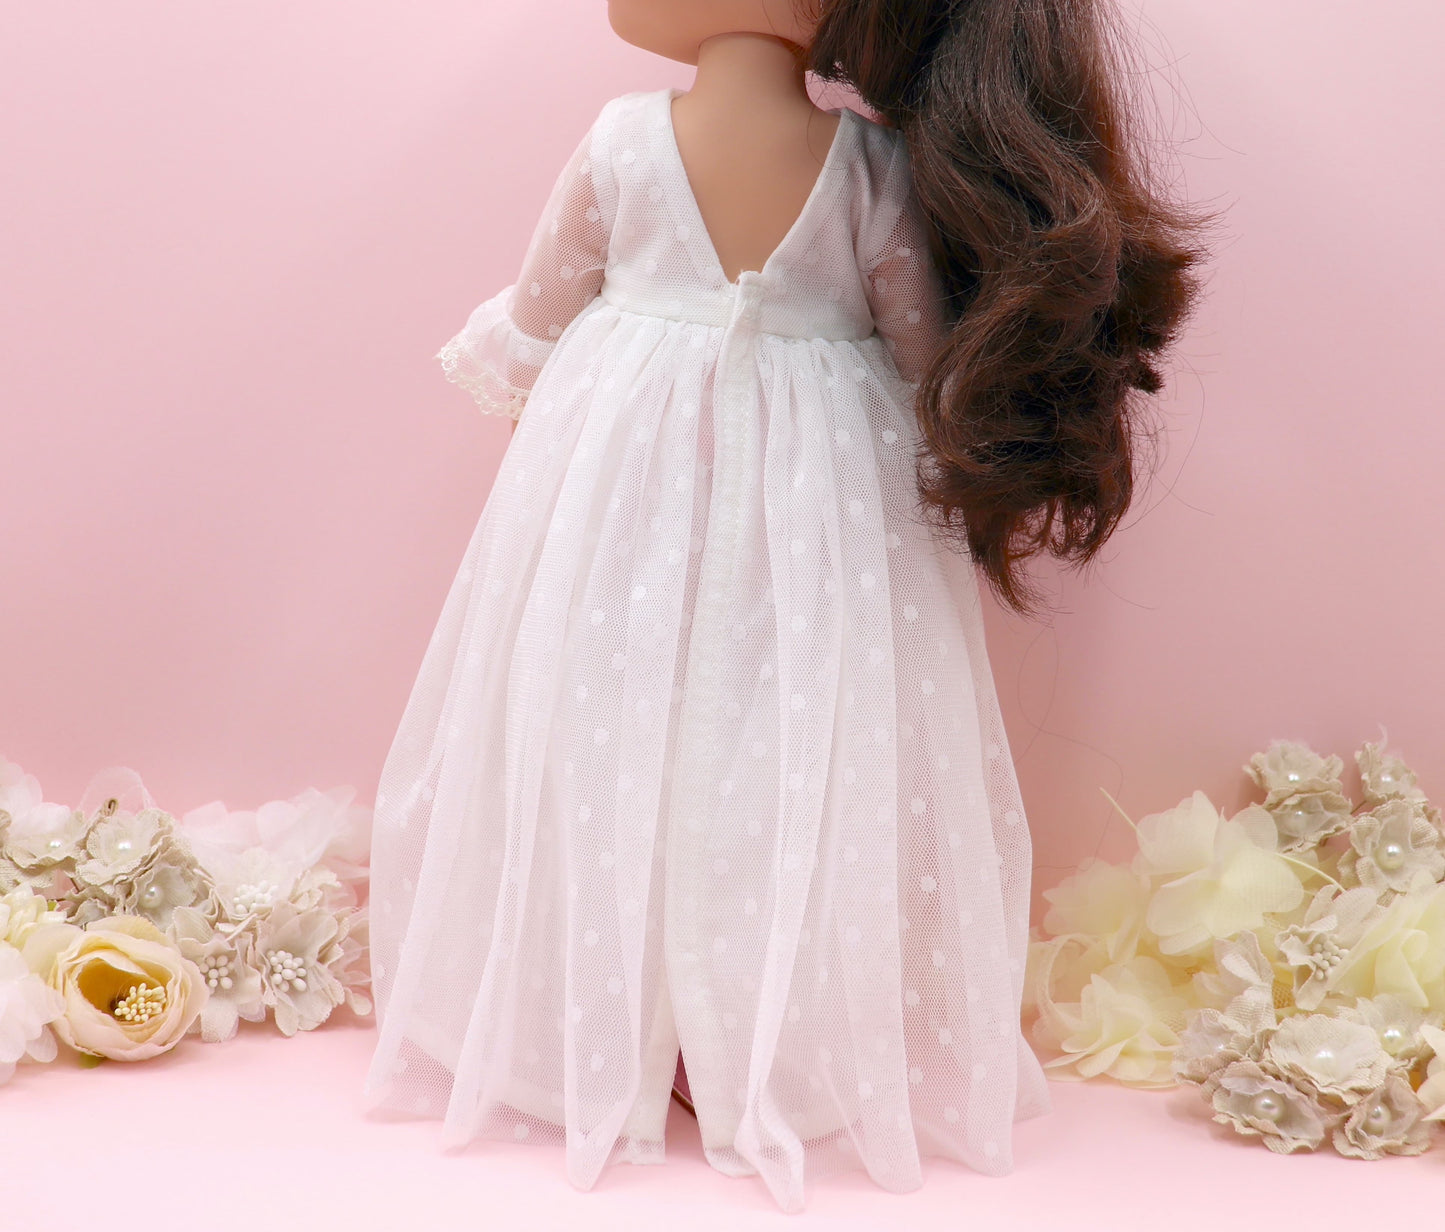 Muñeca de comunión personalizada con vestido Catalina